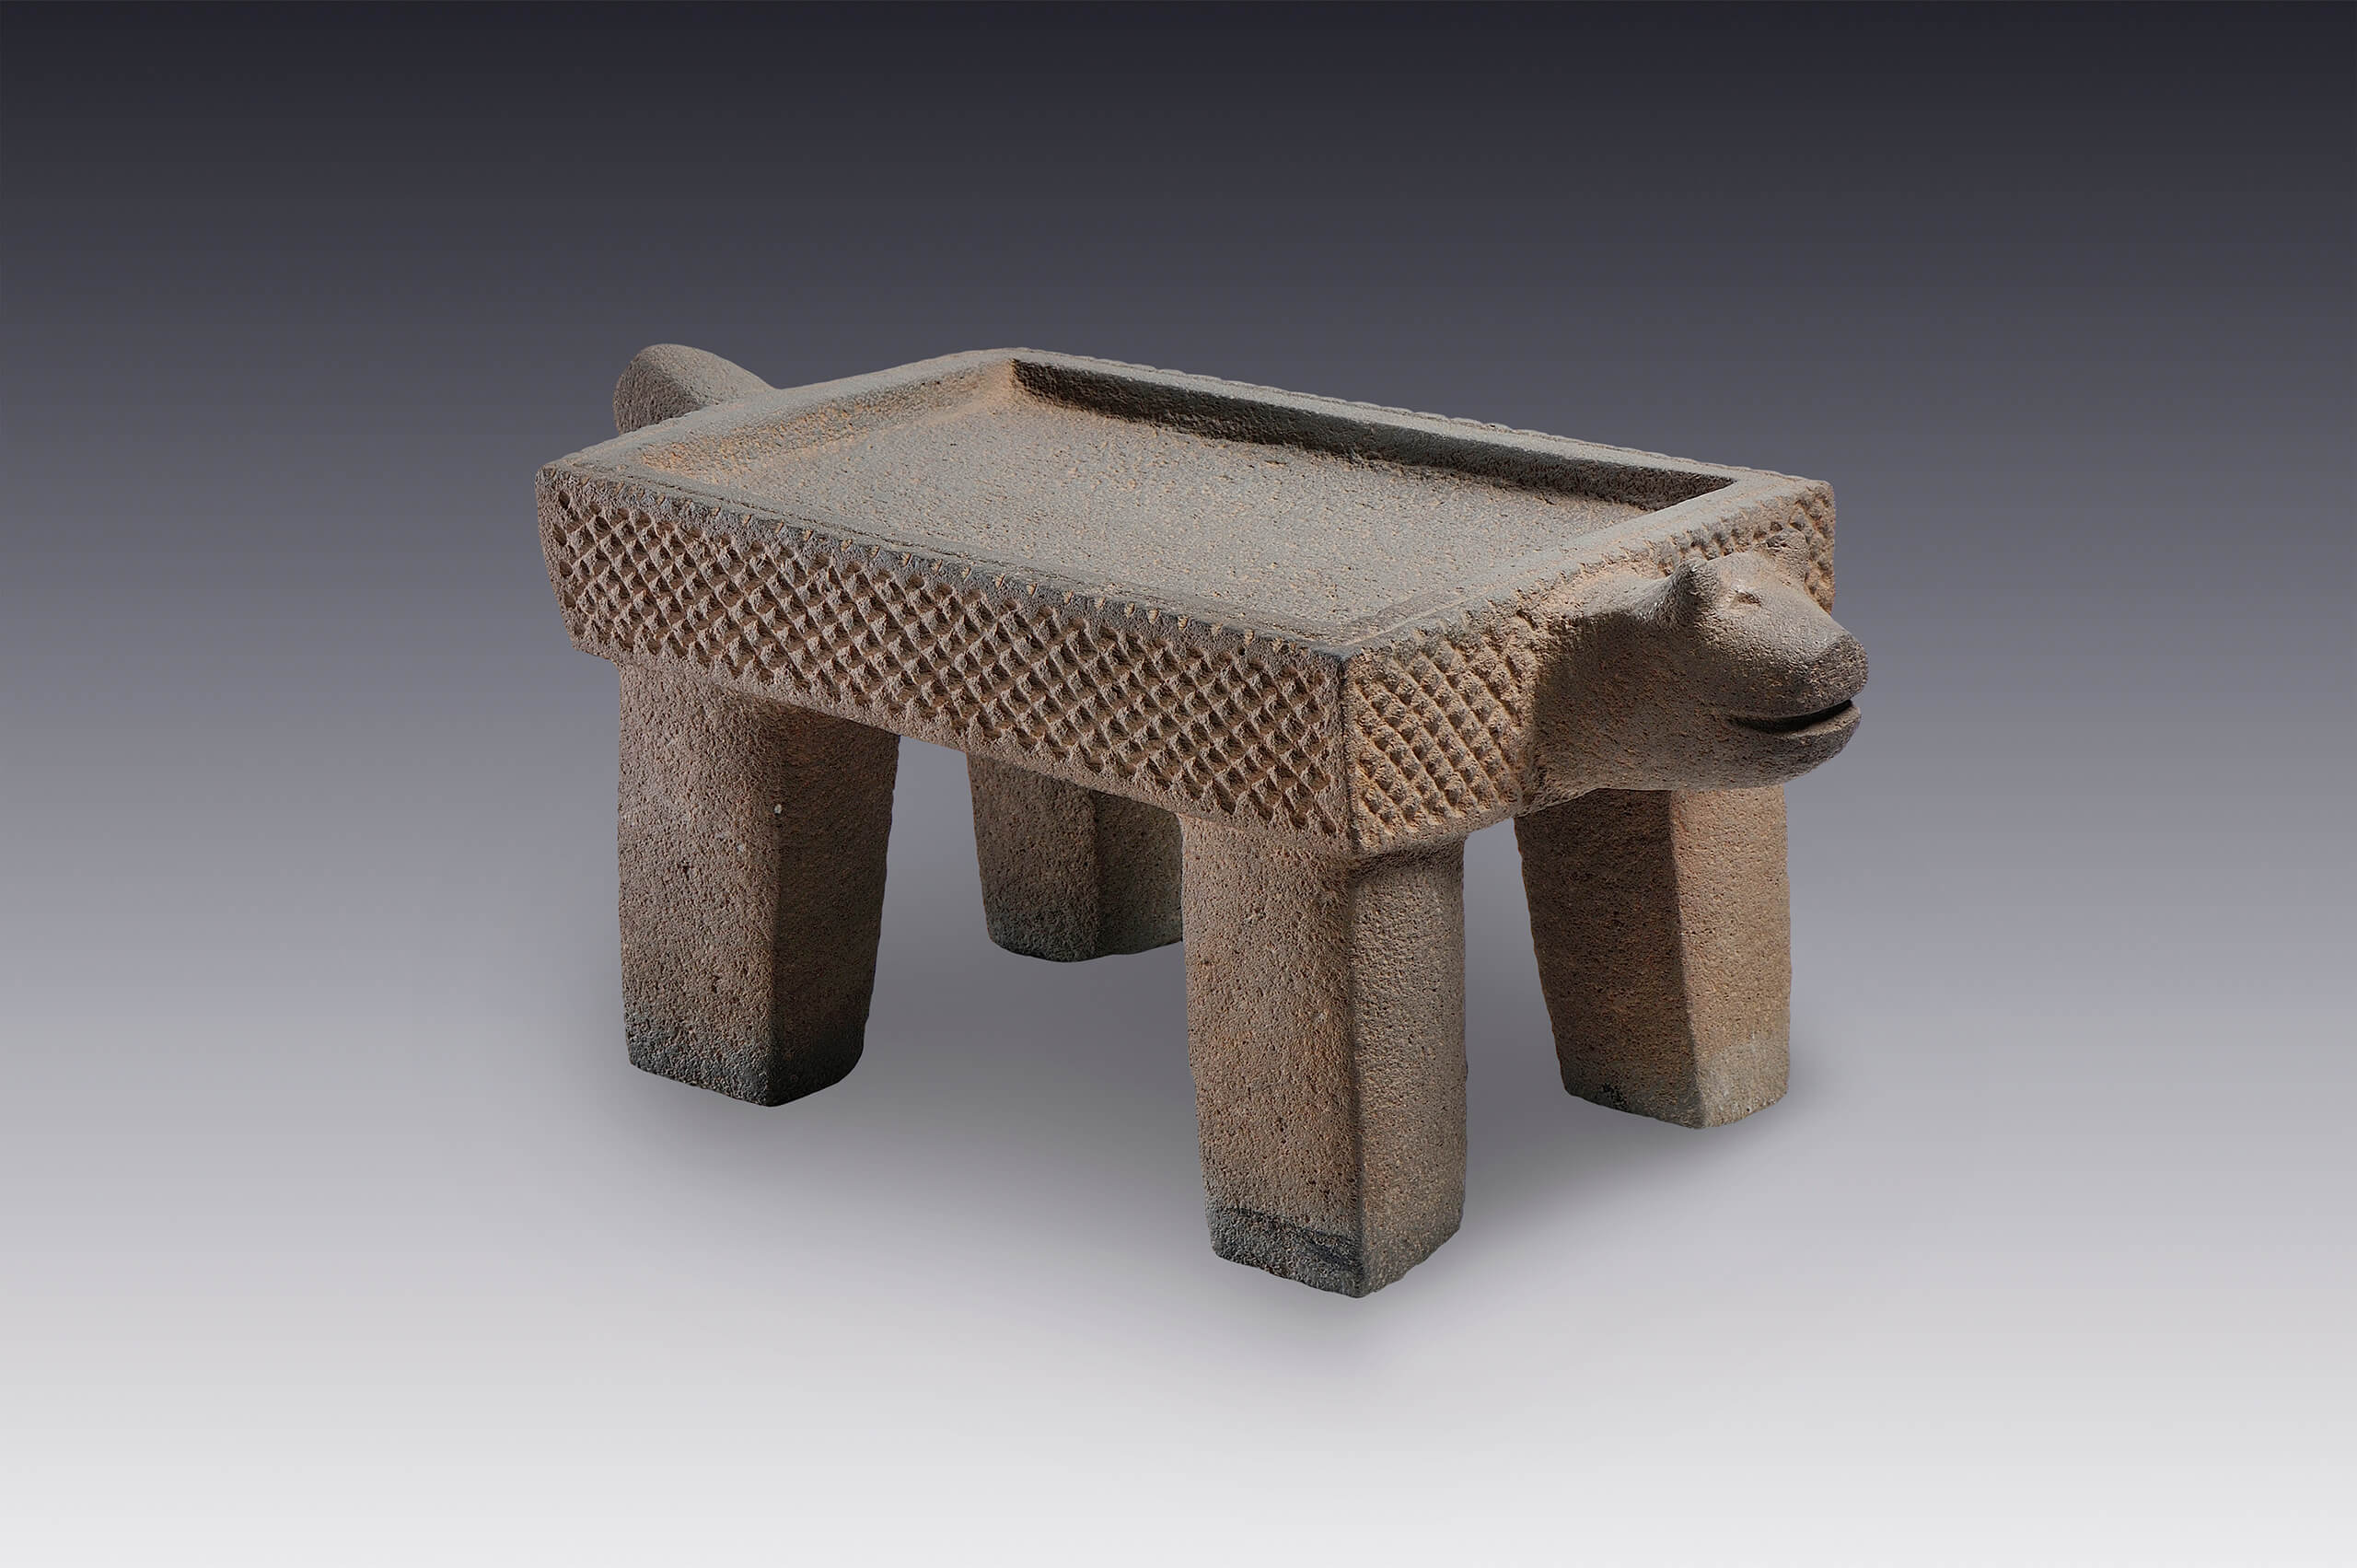 Plato de ofrenda con apariencia de metate | El México antiguo. Salas de Arte Prehispánico | Museo Amparo, Puebla